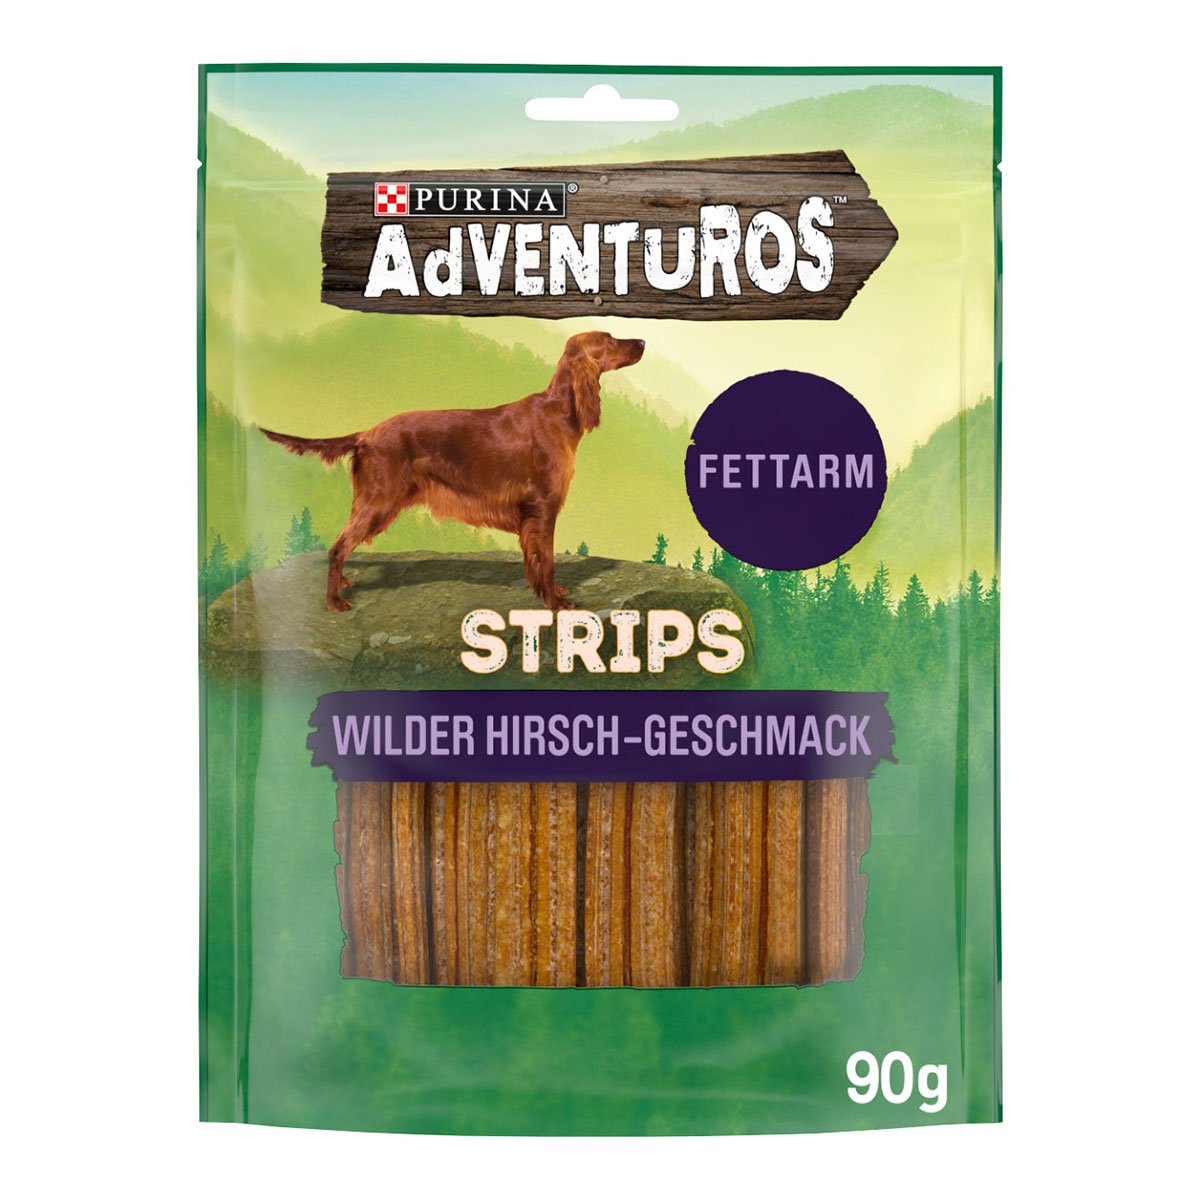 Purina AdVENTuROS Strips, Hundeleckerli fettarm mit Hirschgeschmack 3x90g von AdVENTuROS